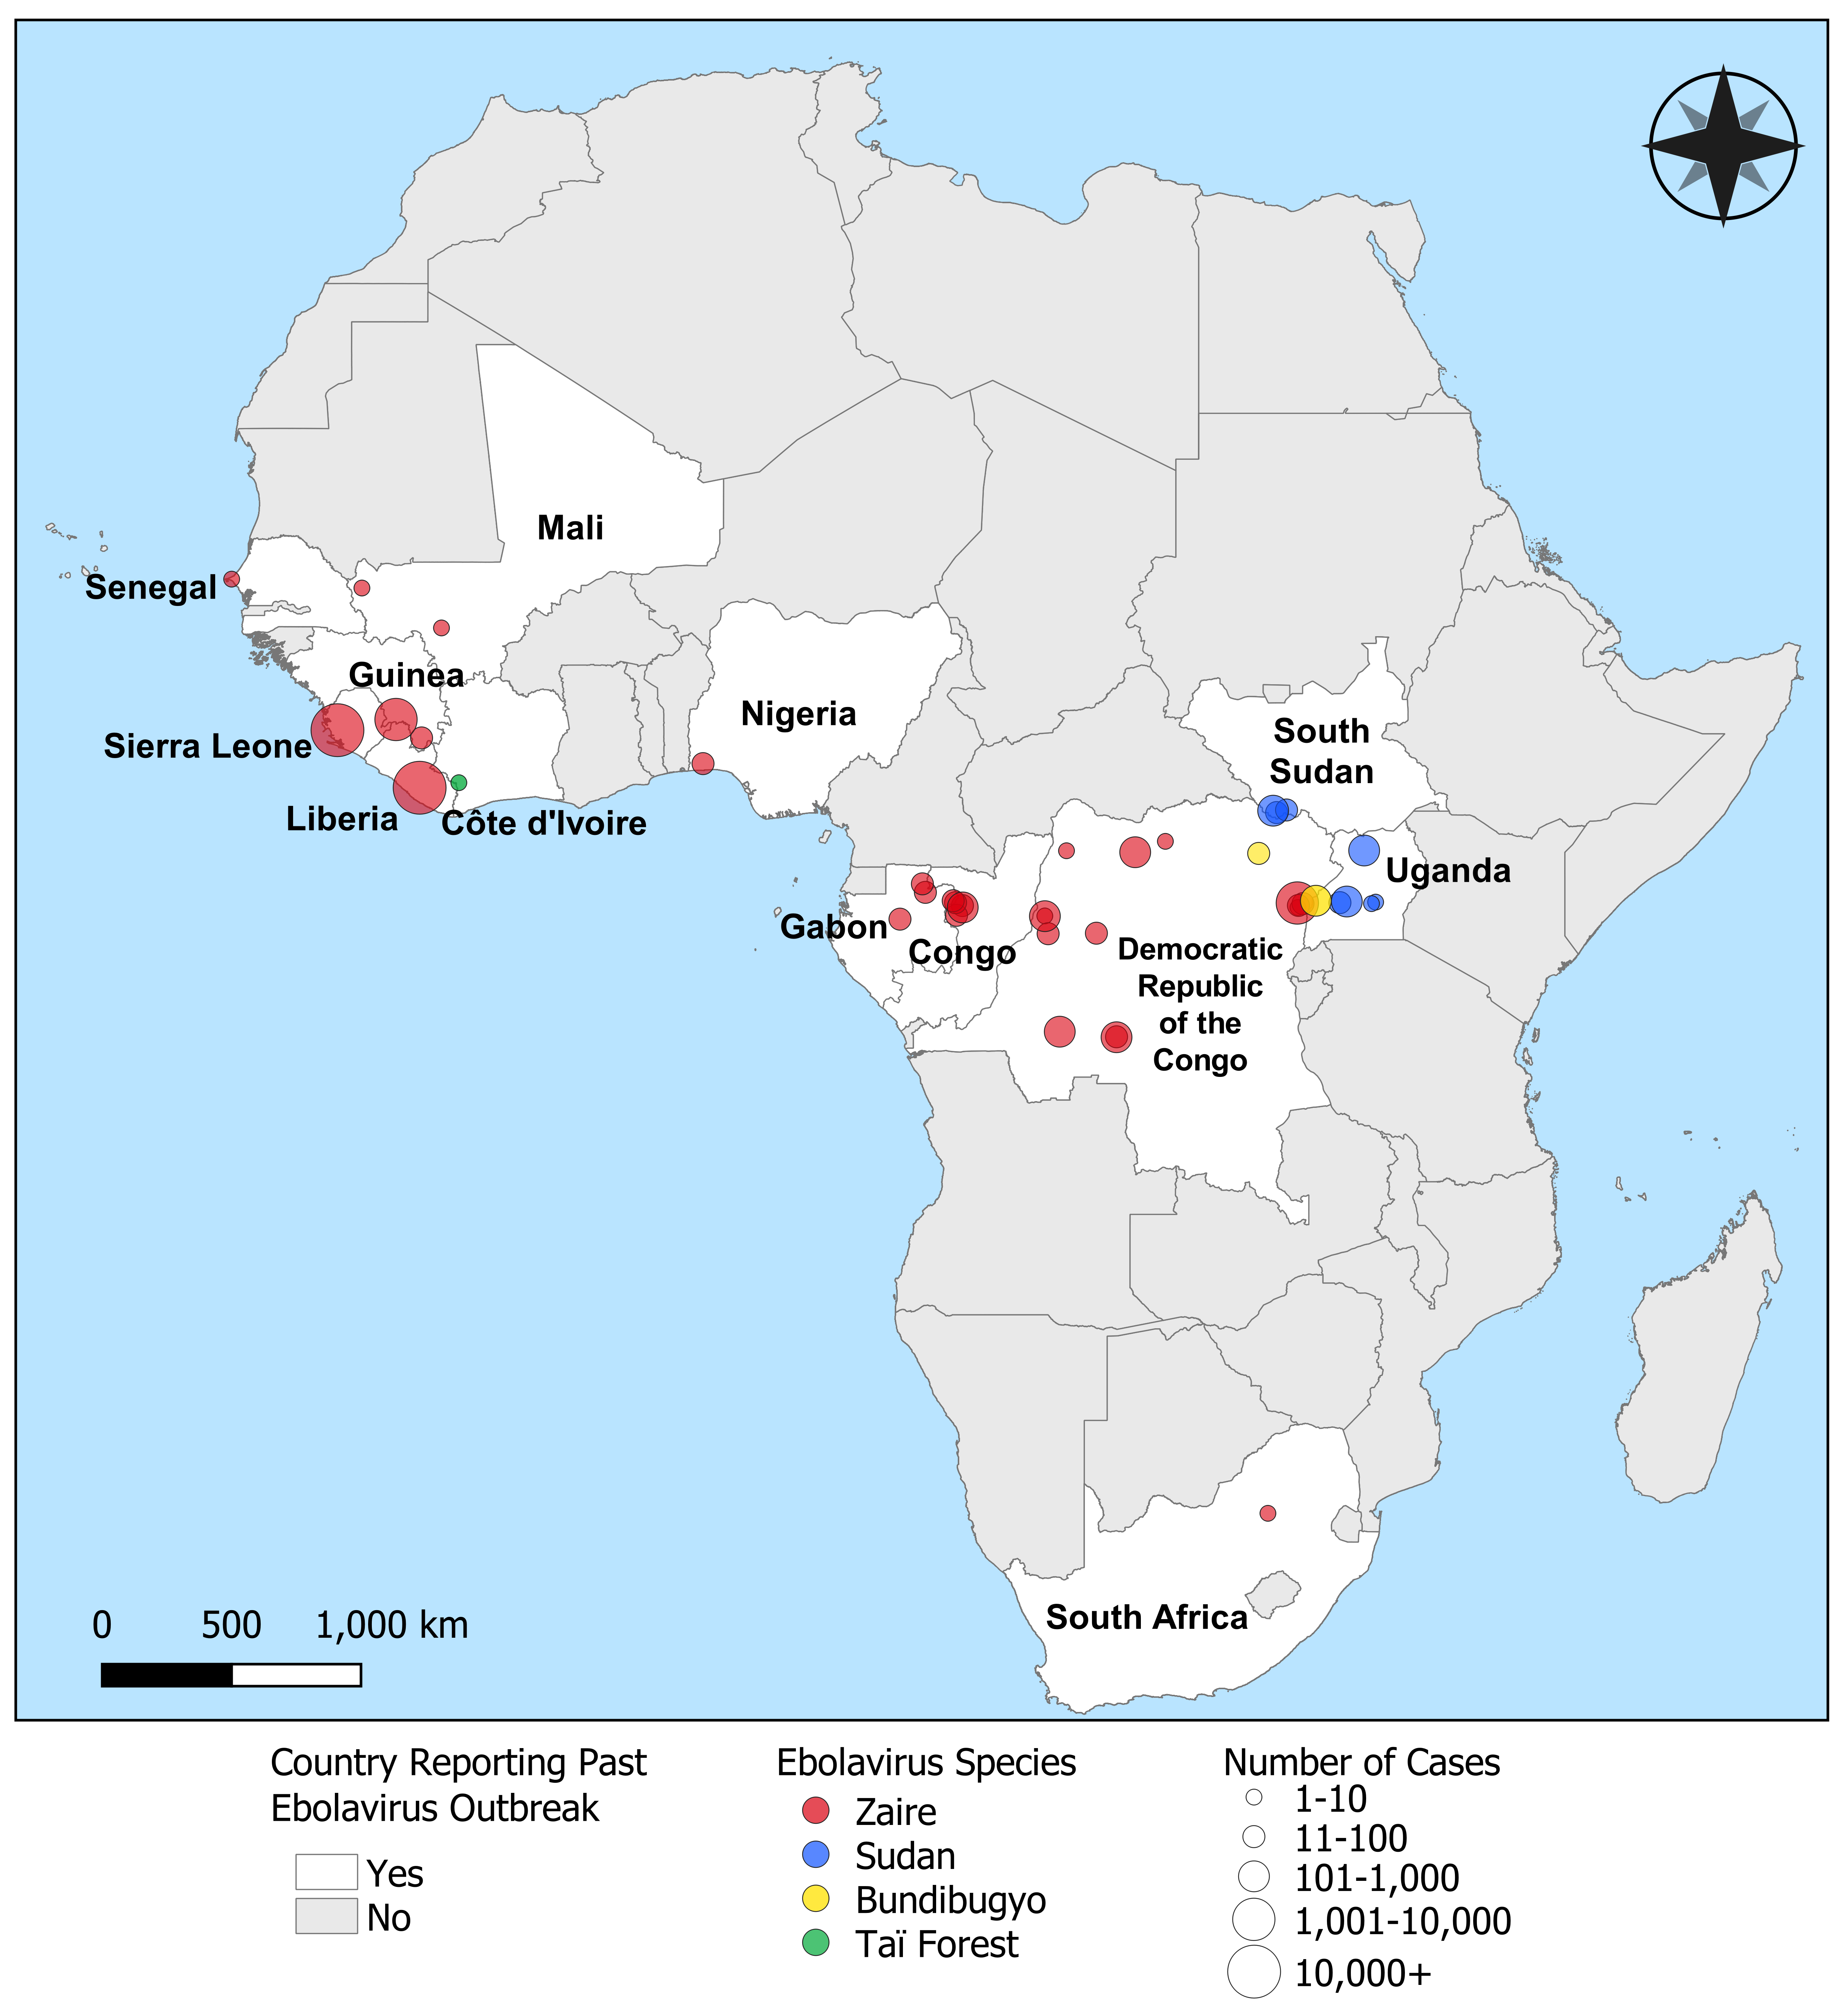 에볼라바이러스 종류와 발발지역